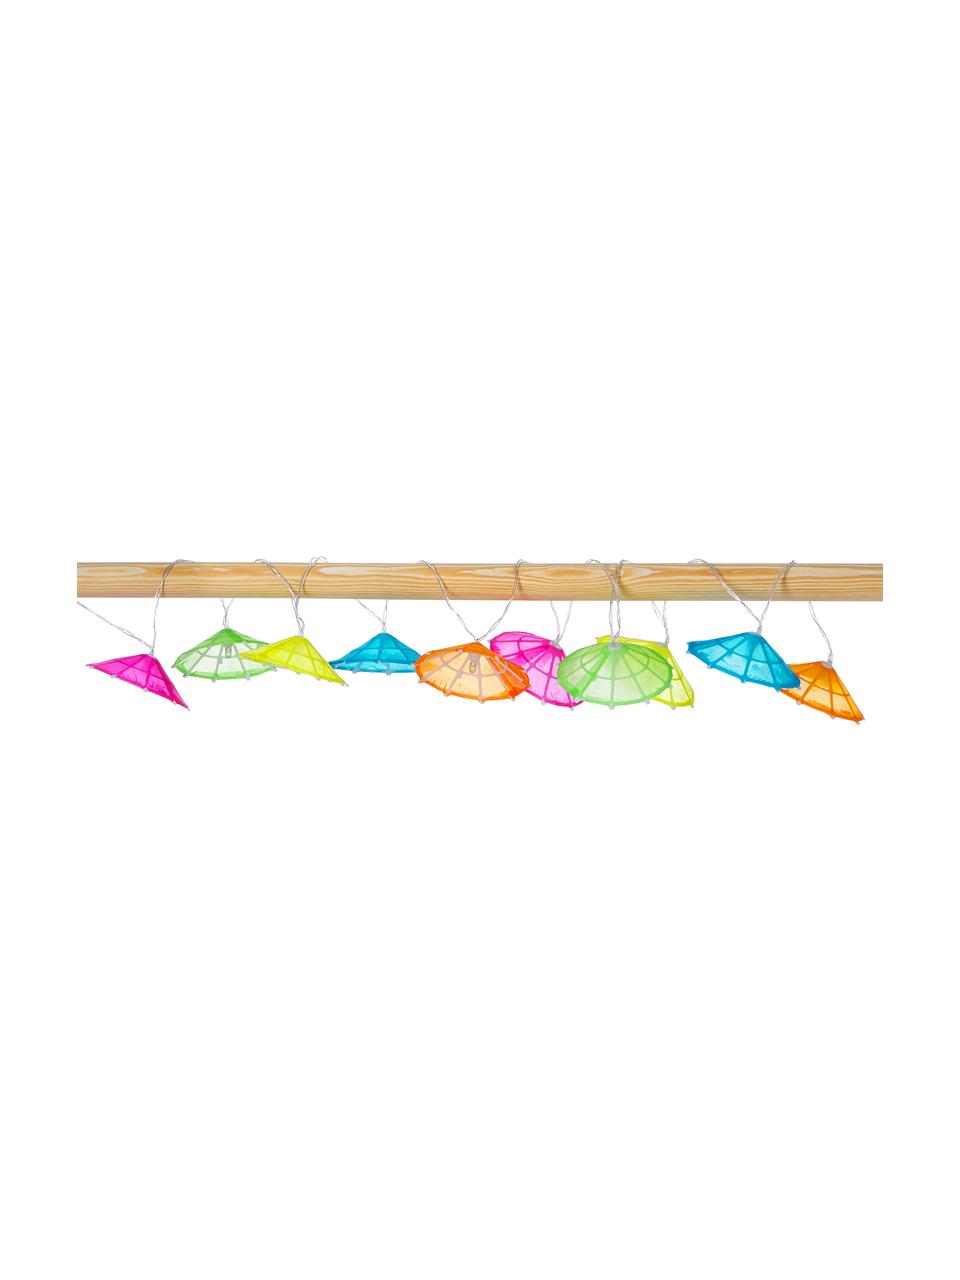 LED-Lichterkette Umbrella, 165 cm, 10 Lampions, Lampions: Baumwolle, Mehrfarbig, L 165 cm